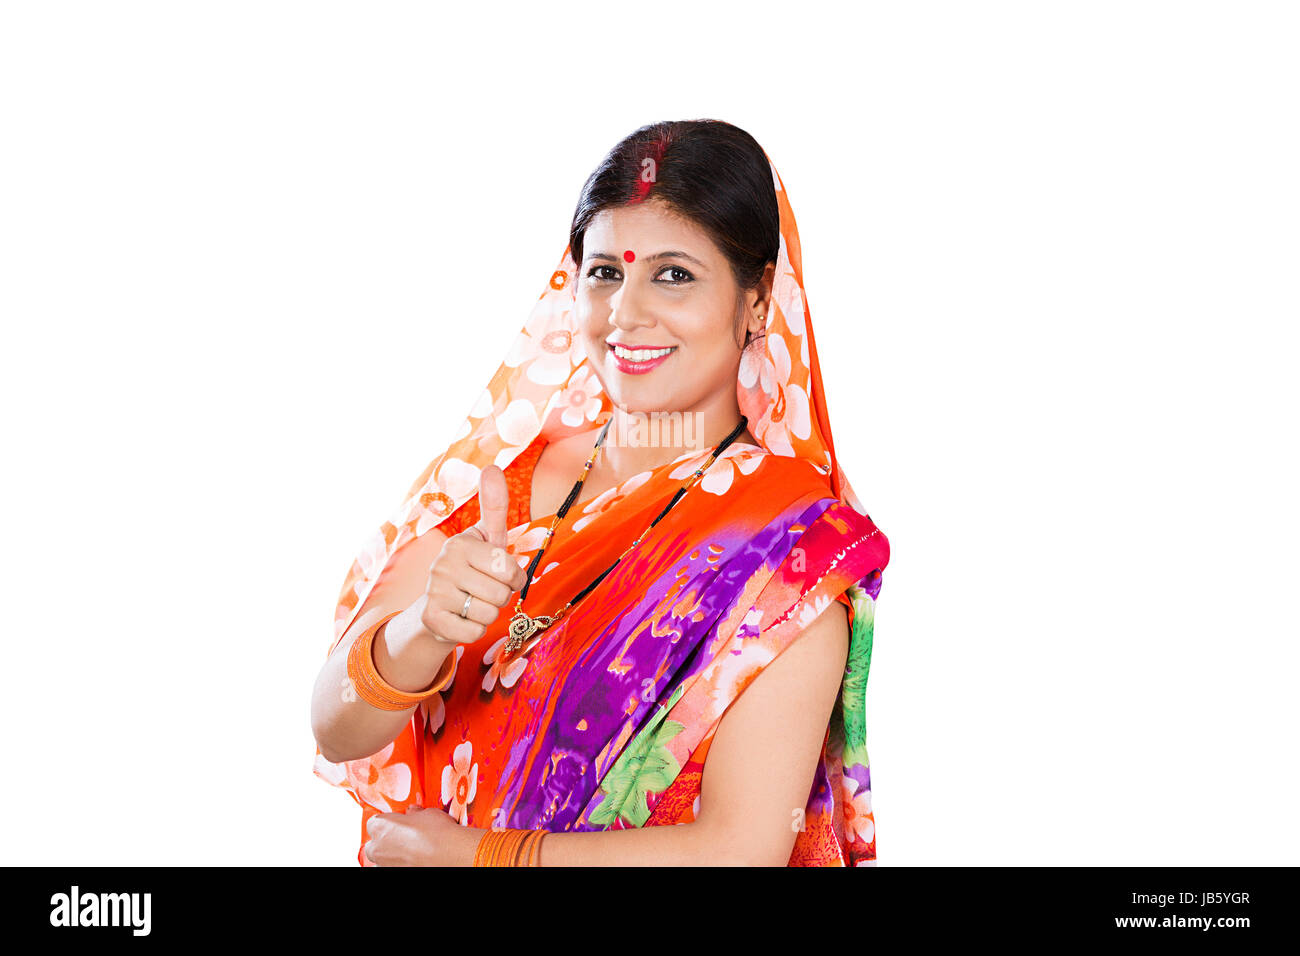 1 femme femme au foyer rural indien et permanent Showing Thumbs up succès Smiling Banque D'Images